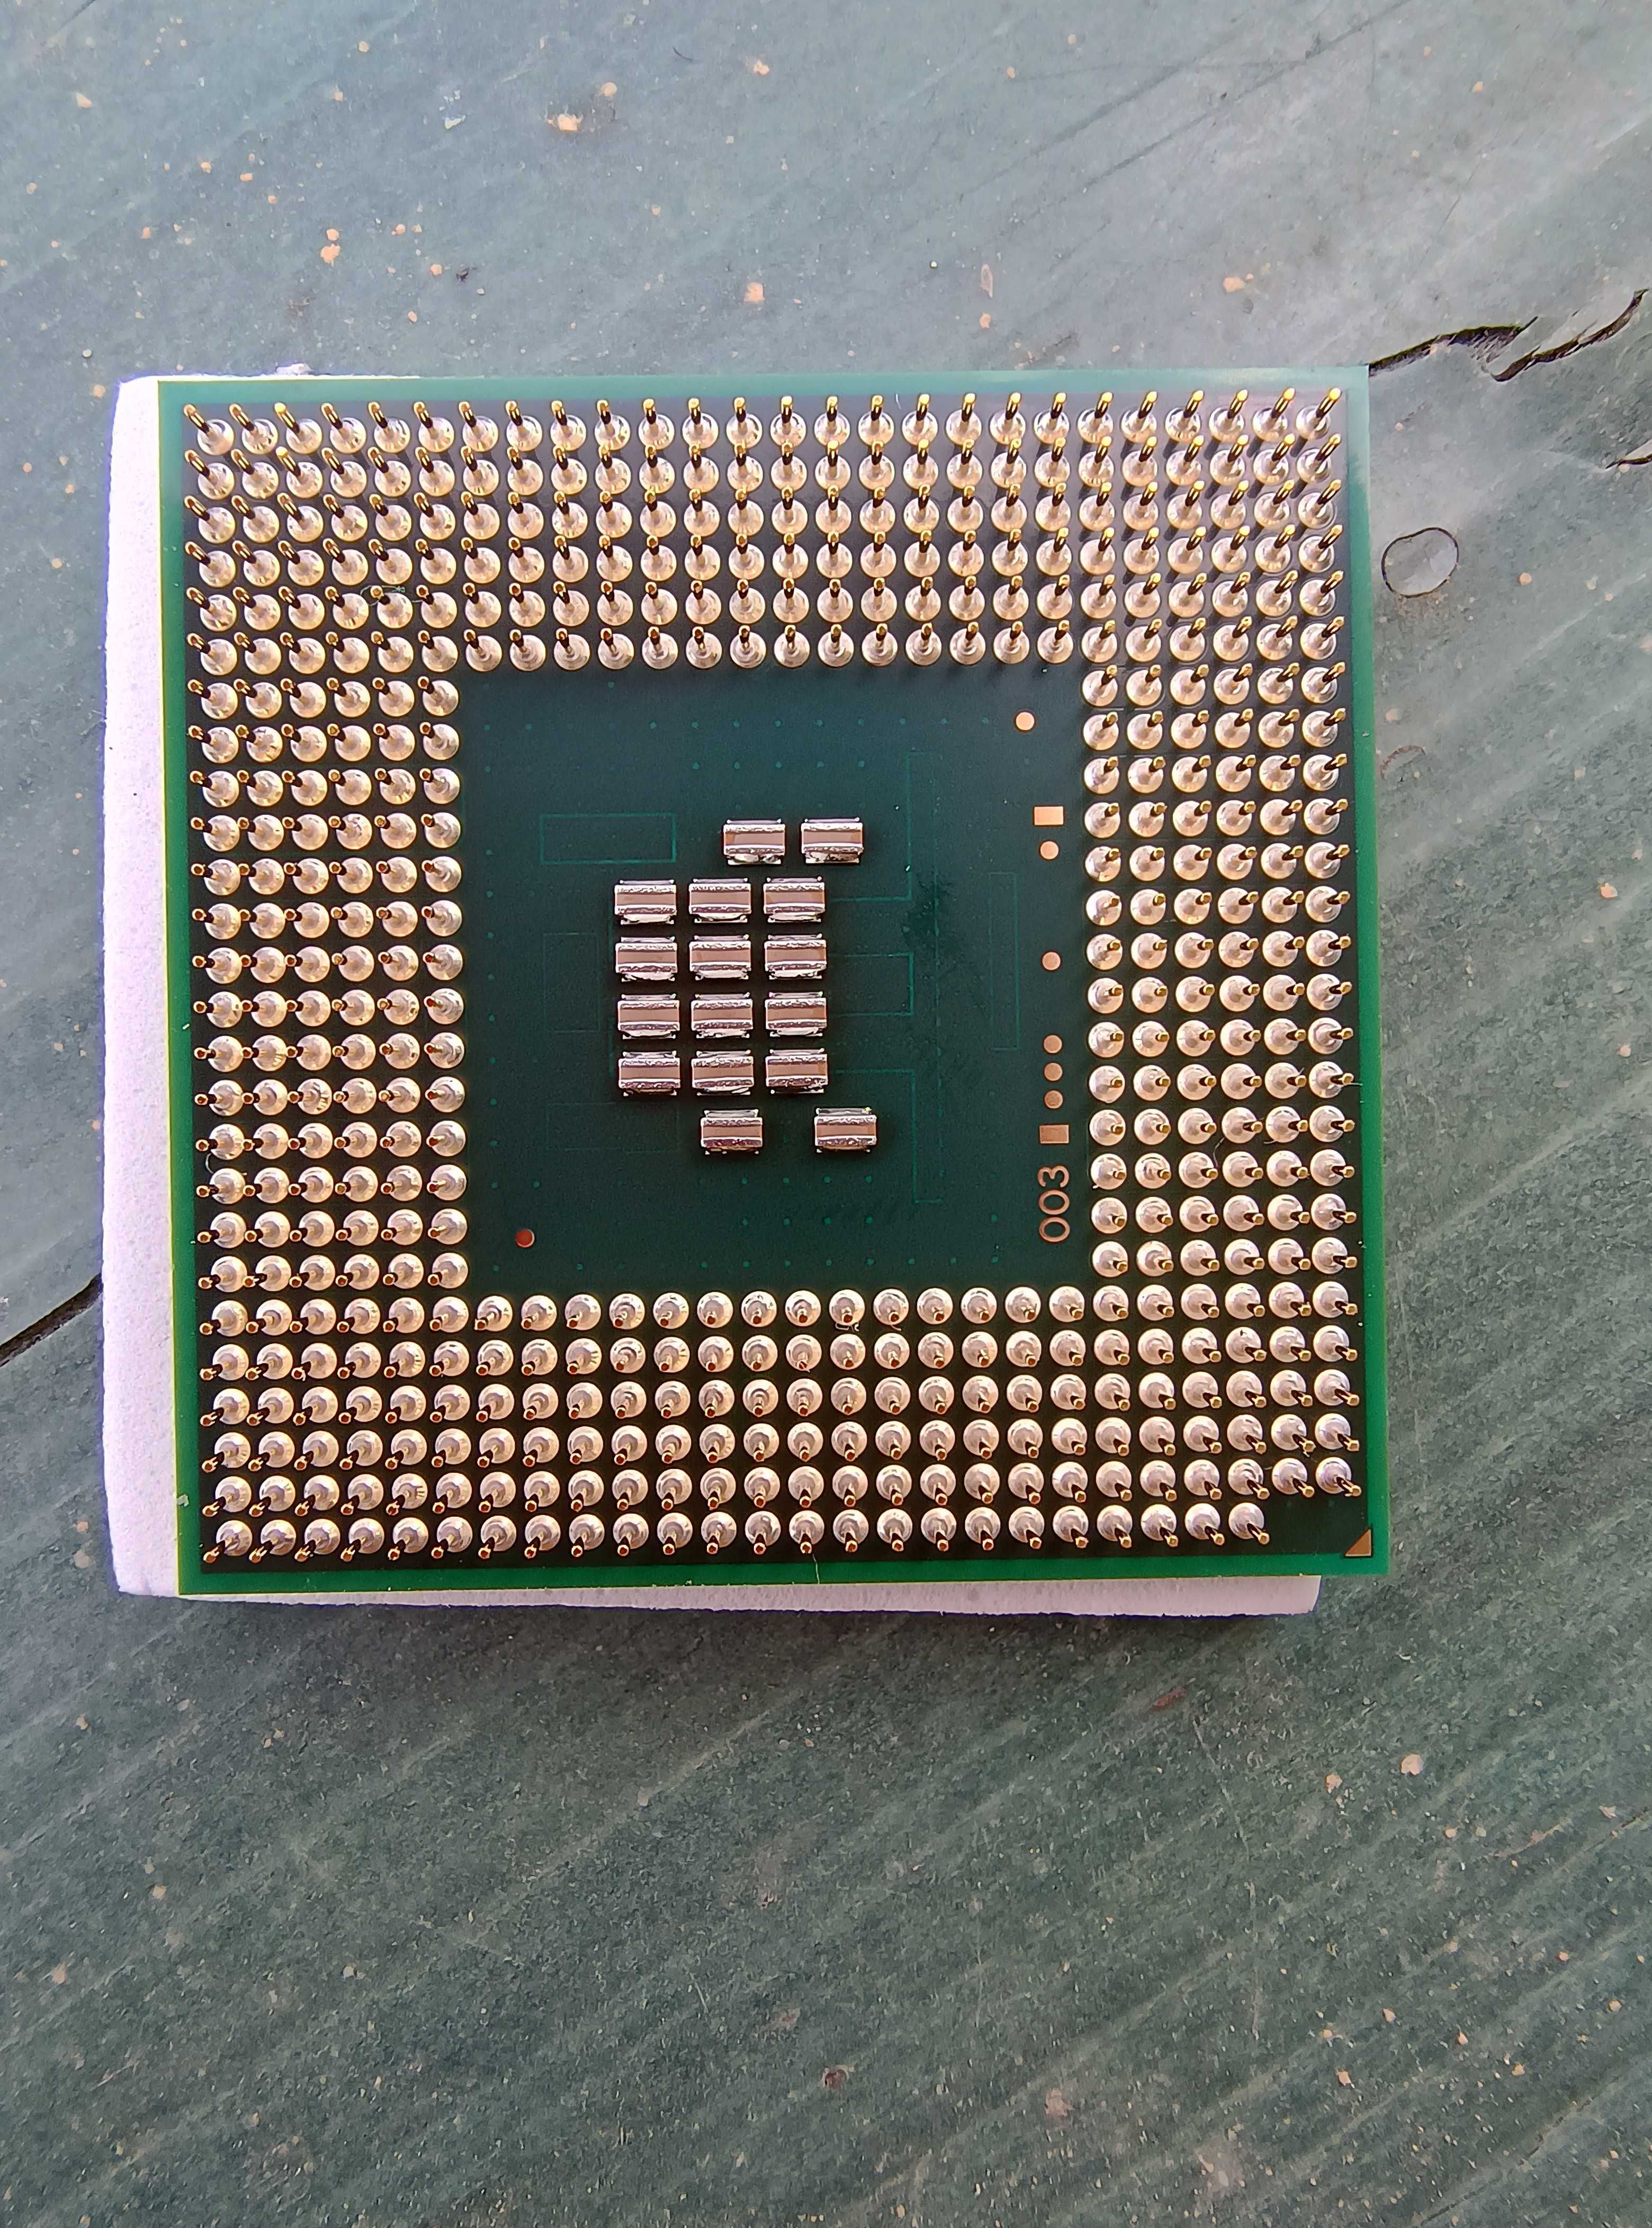 Procesor laptop Intel Celeron 500 la 2 GHz. Impecabil!